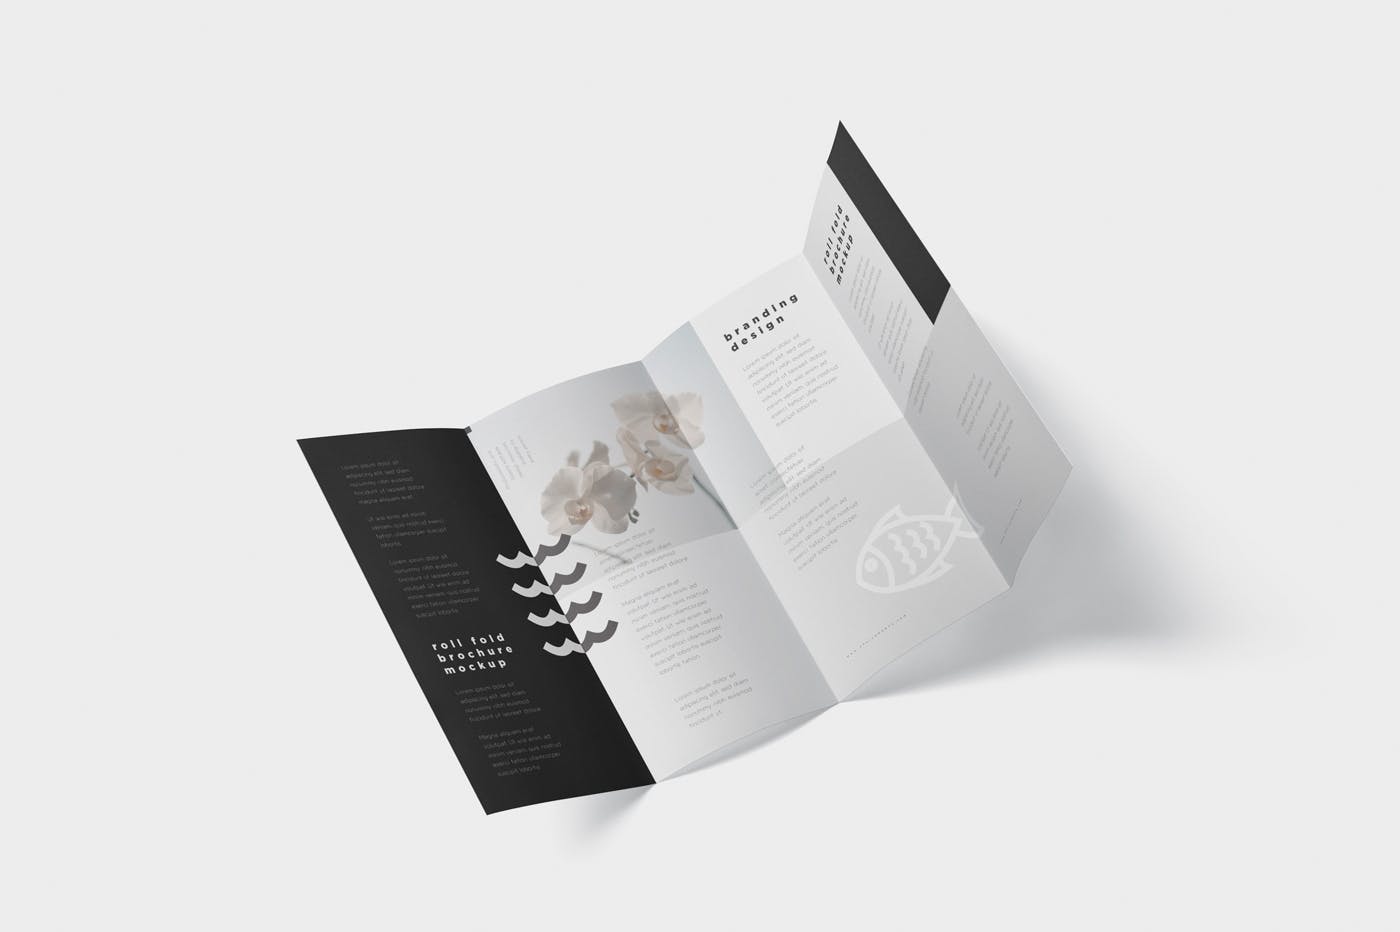 折叠设计风格企业传单/宣传册设计样机普贤居精选 Roll-Fold Brochure Mockup – DL DIN Lang Size插图(5)